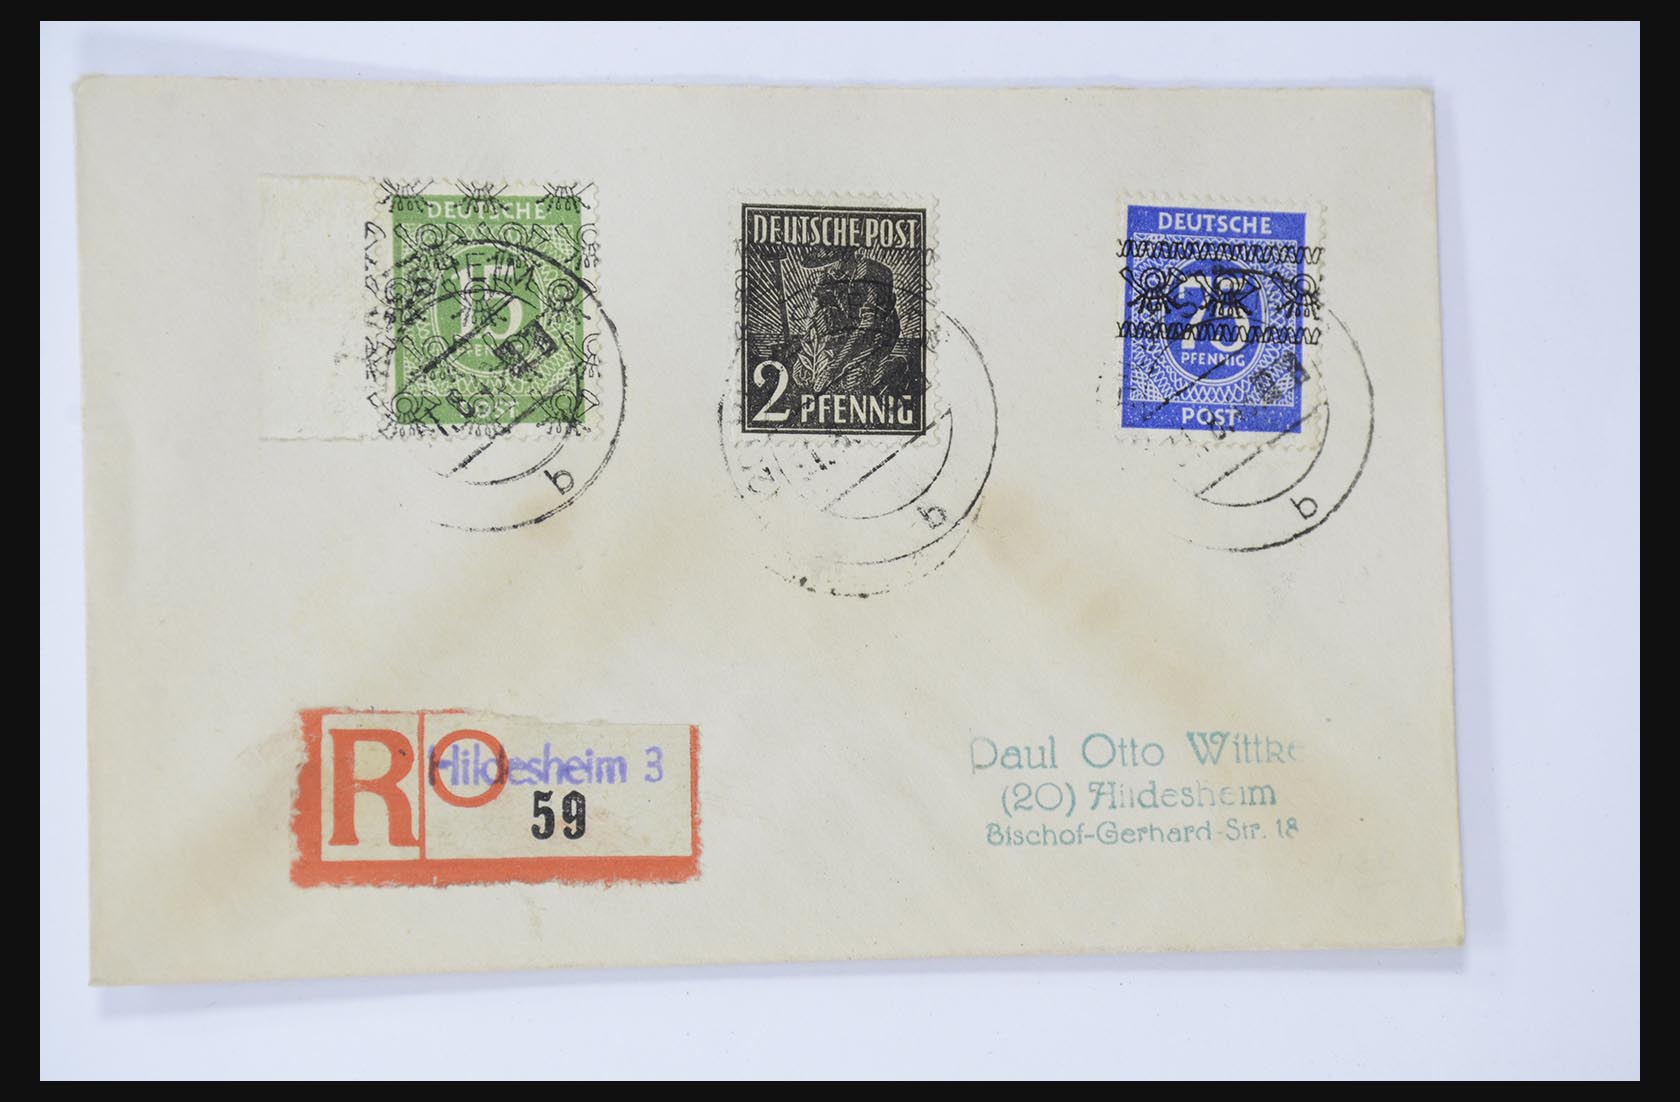 31581 045 - 31581 Duitsland brieven en FDC's 1945-1981.